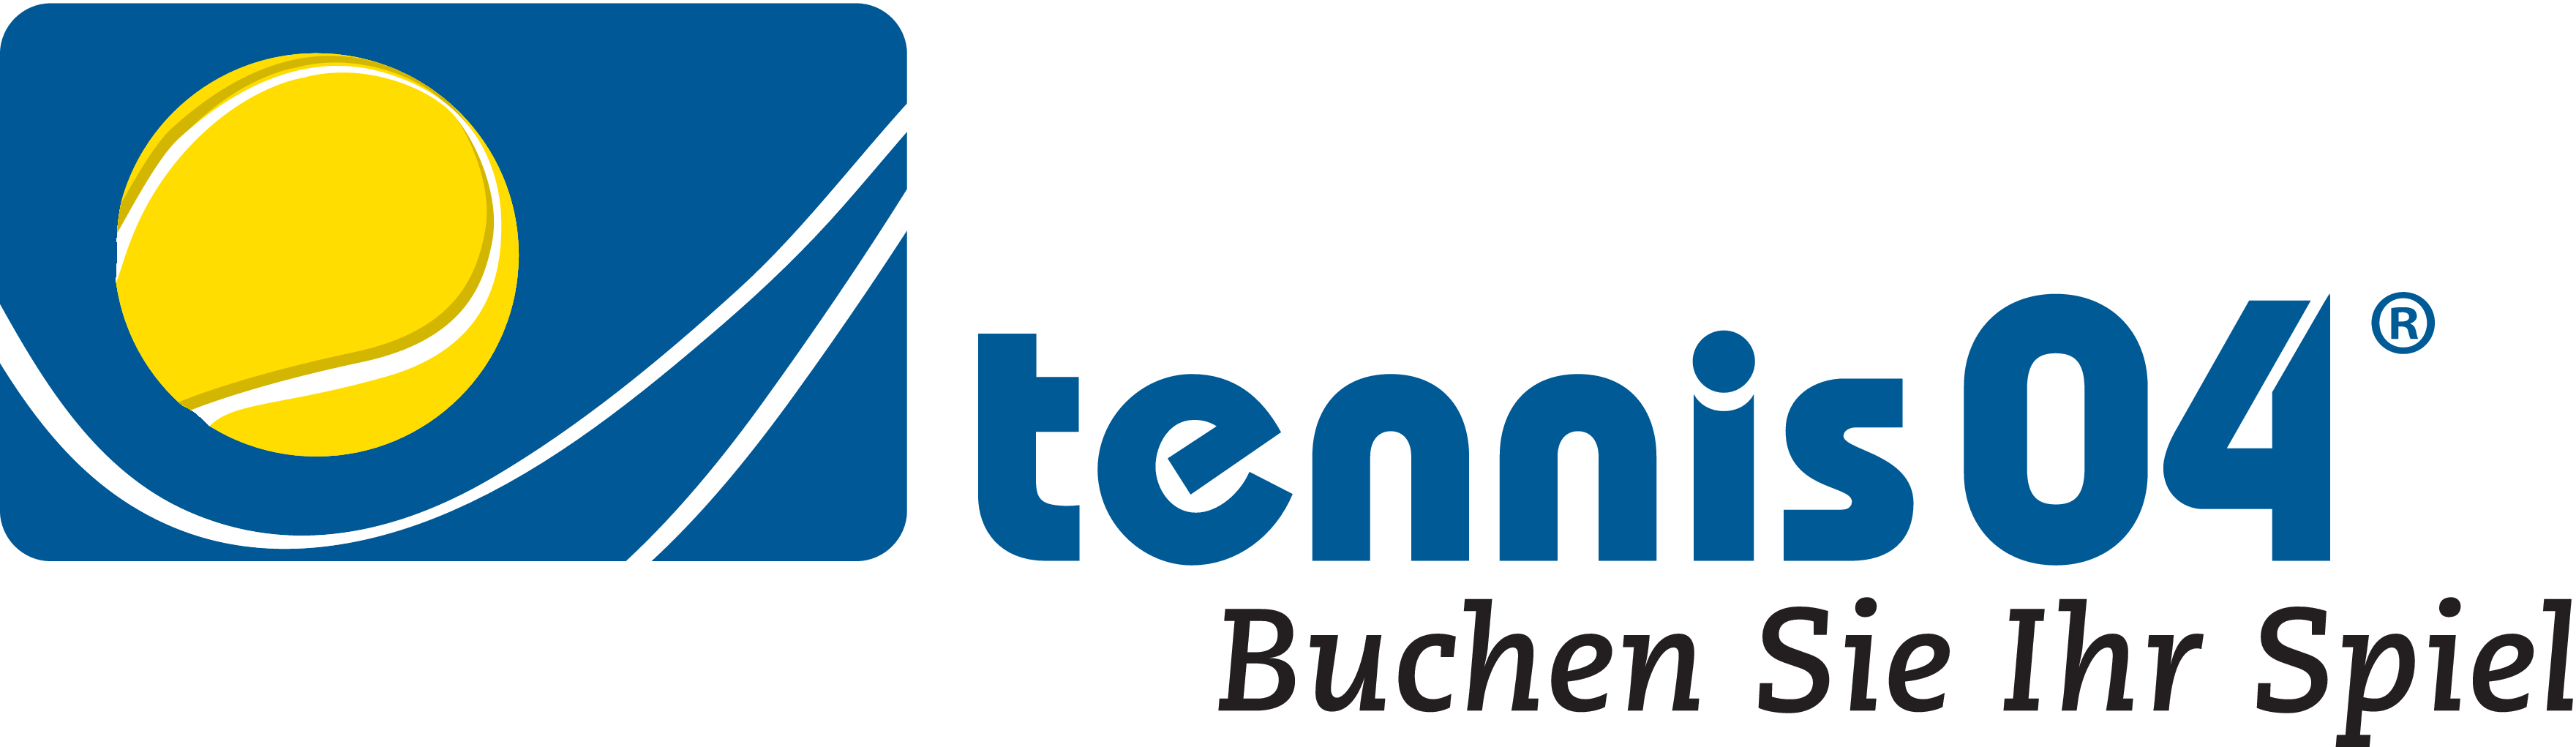 logo_tennis04